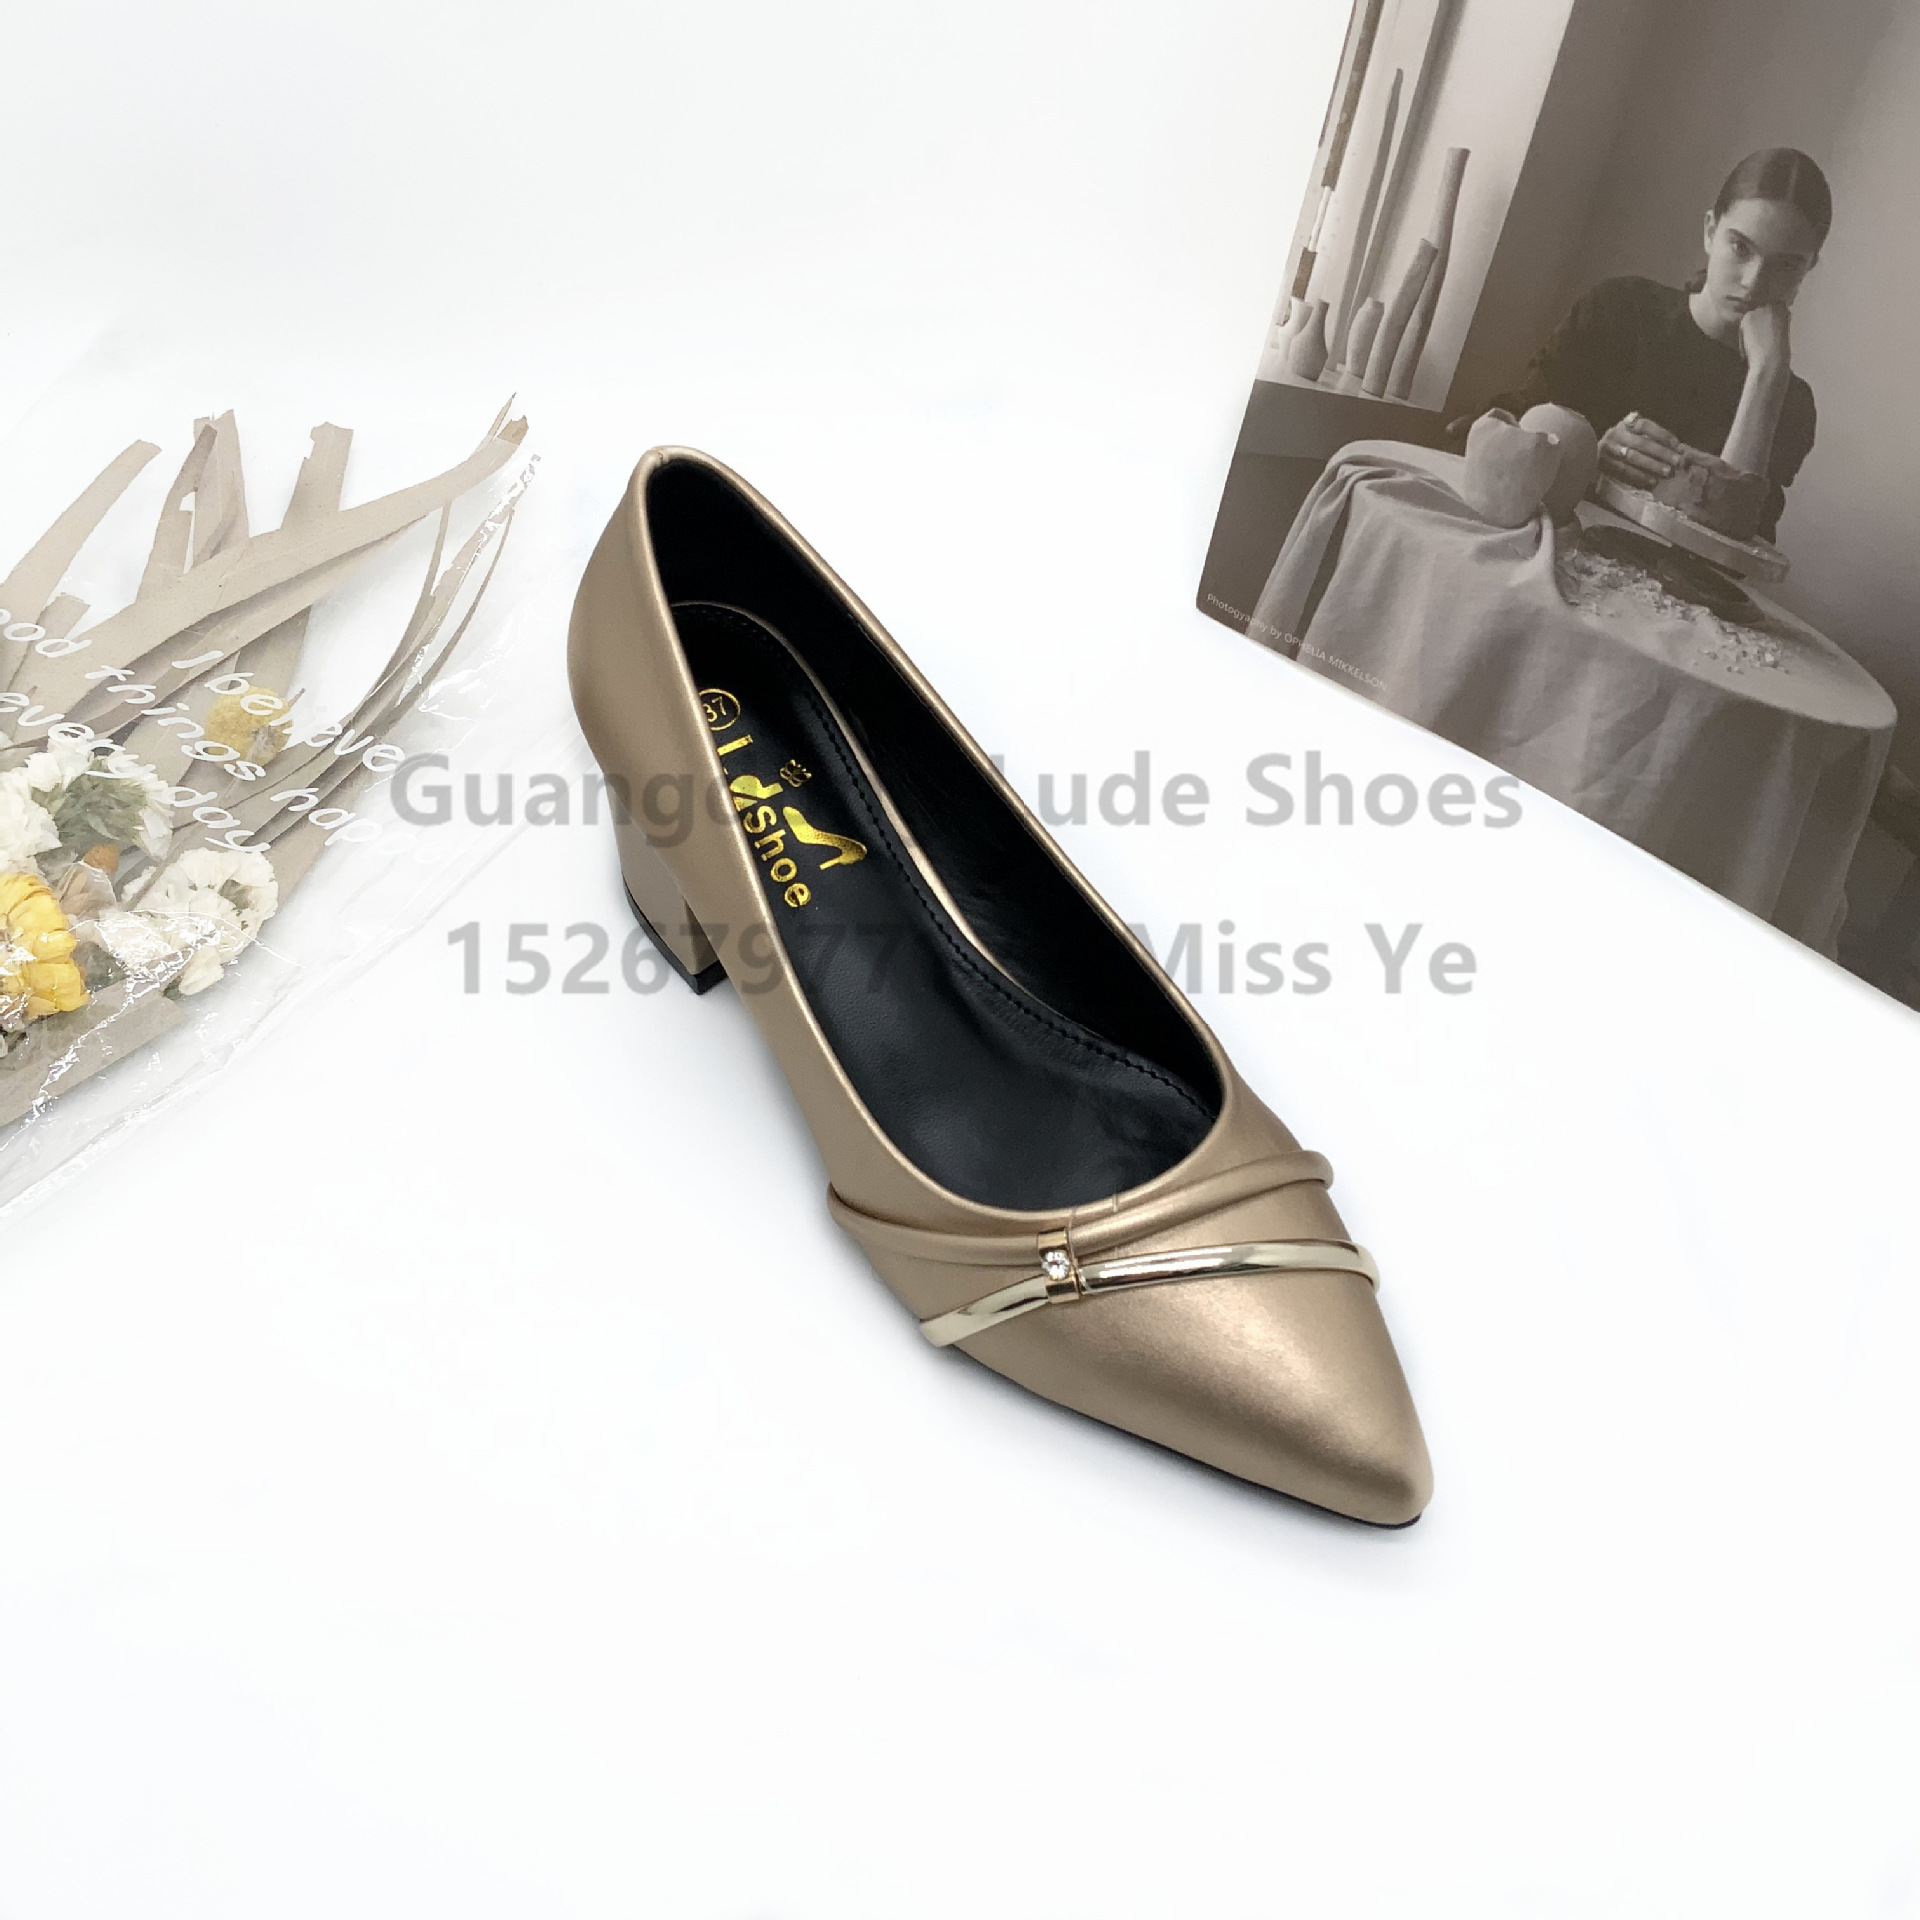 new women‘s high heels fashion shoes chunky heel pointed-toe fashion lady mature guangzhou women‘s shoes handcraft shoes